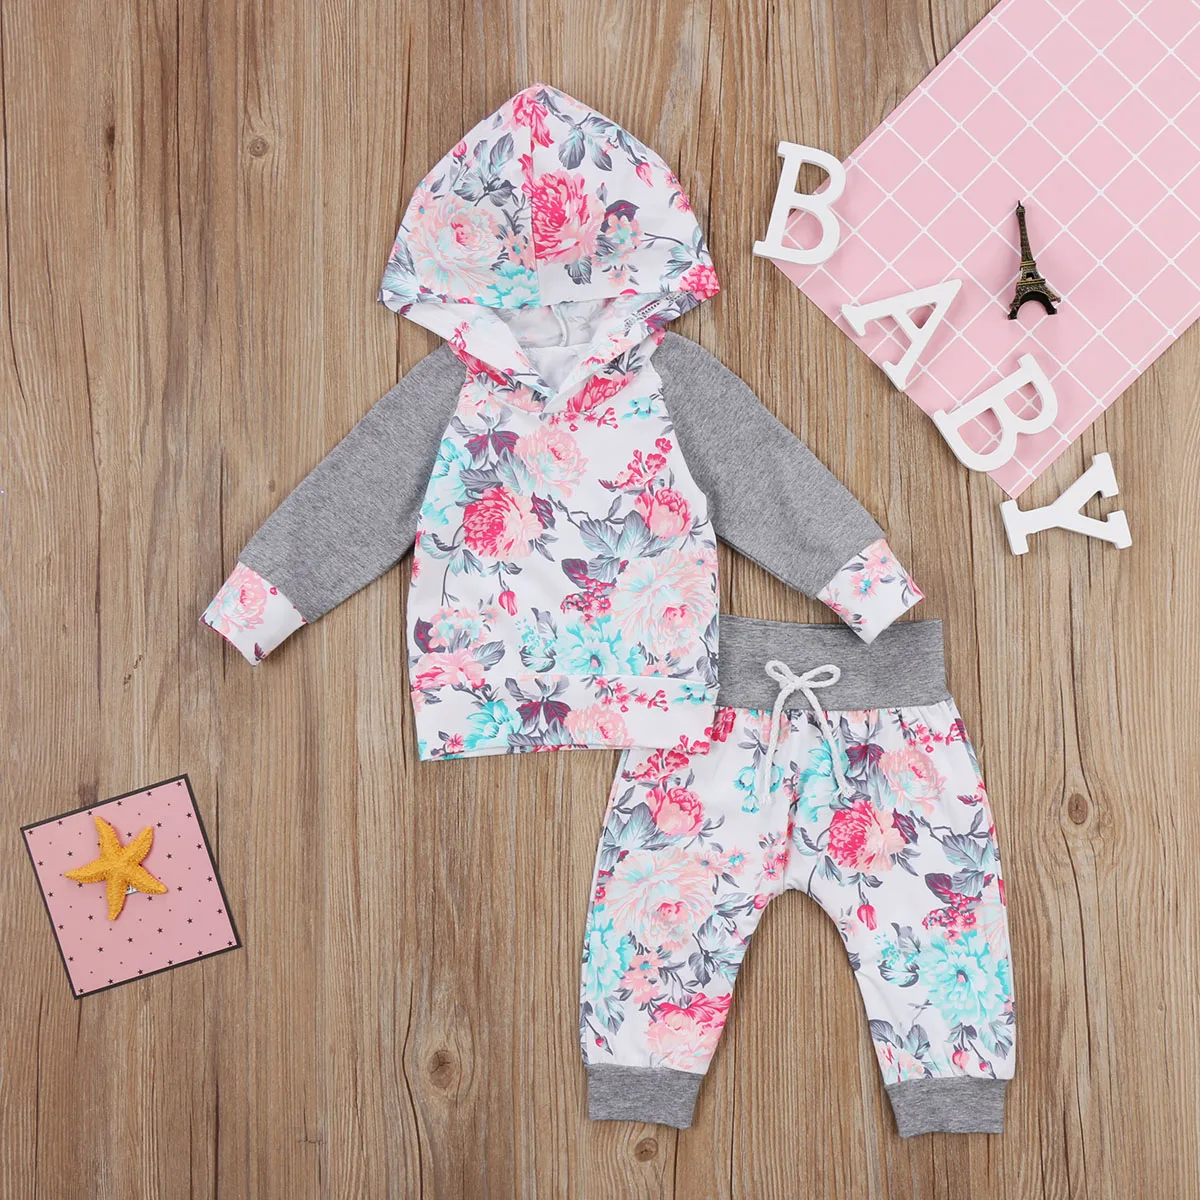 Новорожденный малыш детская одежда для малышки, на осень, с длинным рукавом, с цветочным принтом, с капюшоном наряды топы, штаны, леггинсы одежда для детей